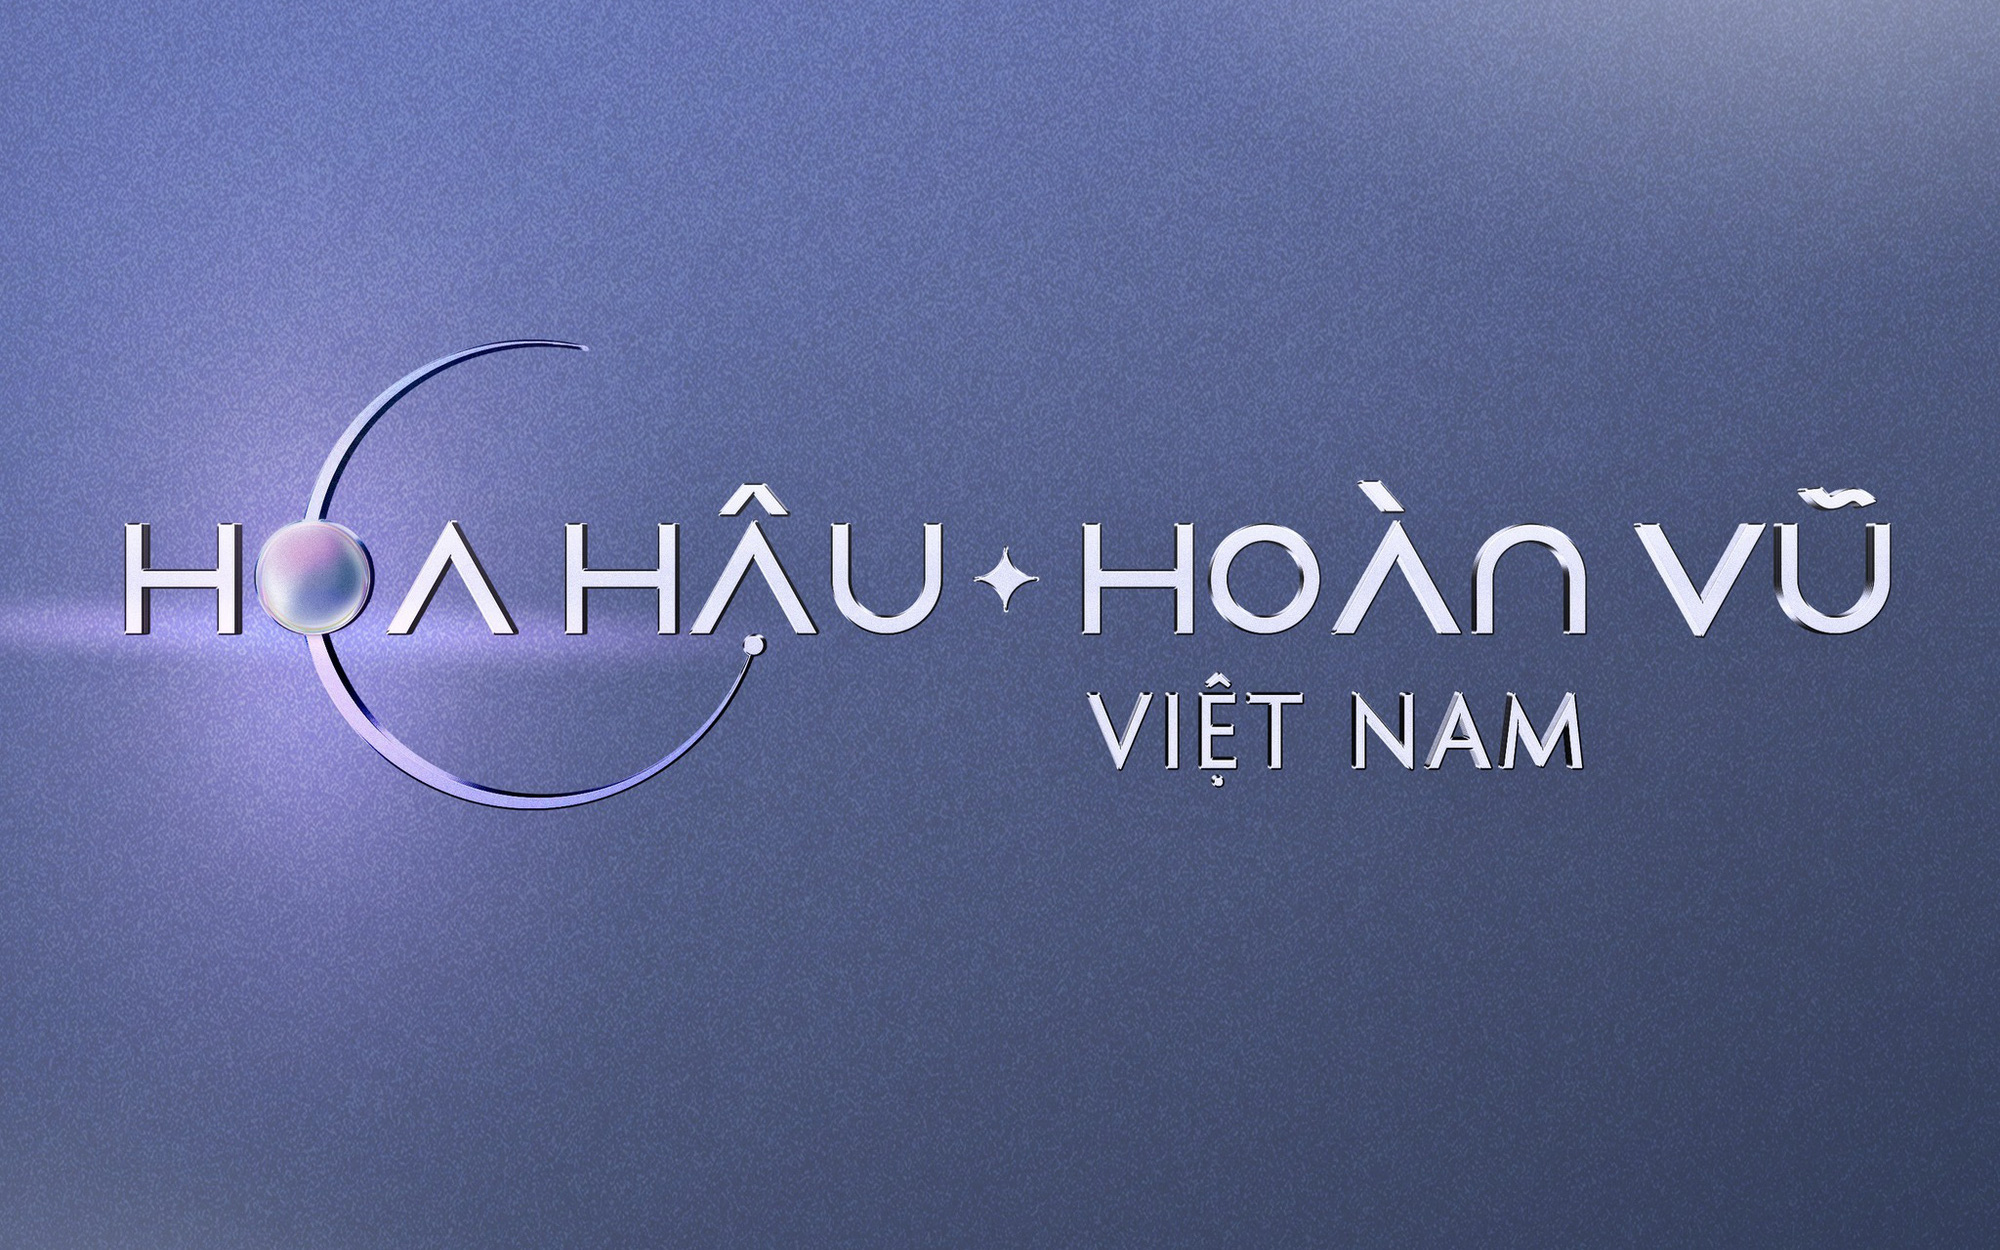 Hoa hậu Hoàn vũ Việt Nam 